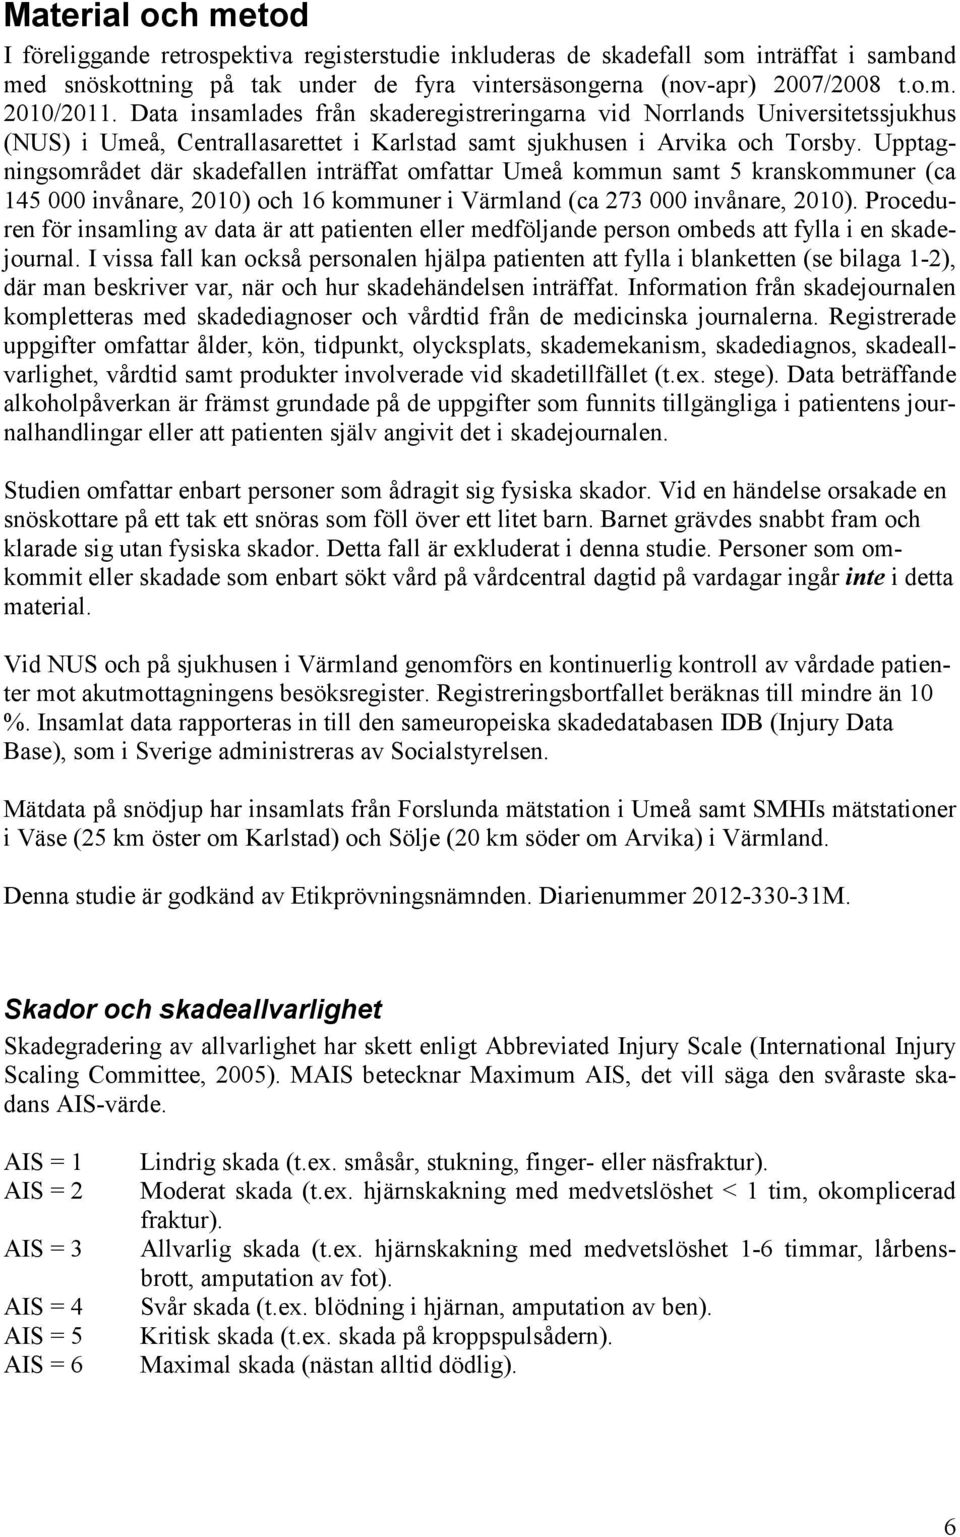 Upptagningsområdet där skadefallen inträffat omfattar Umeå kommun samt 5 kranskommuner (ca 145 000 invånare, 2010) och 16 kommuner i Värmland (ca 273 000 invånare, 2010).